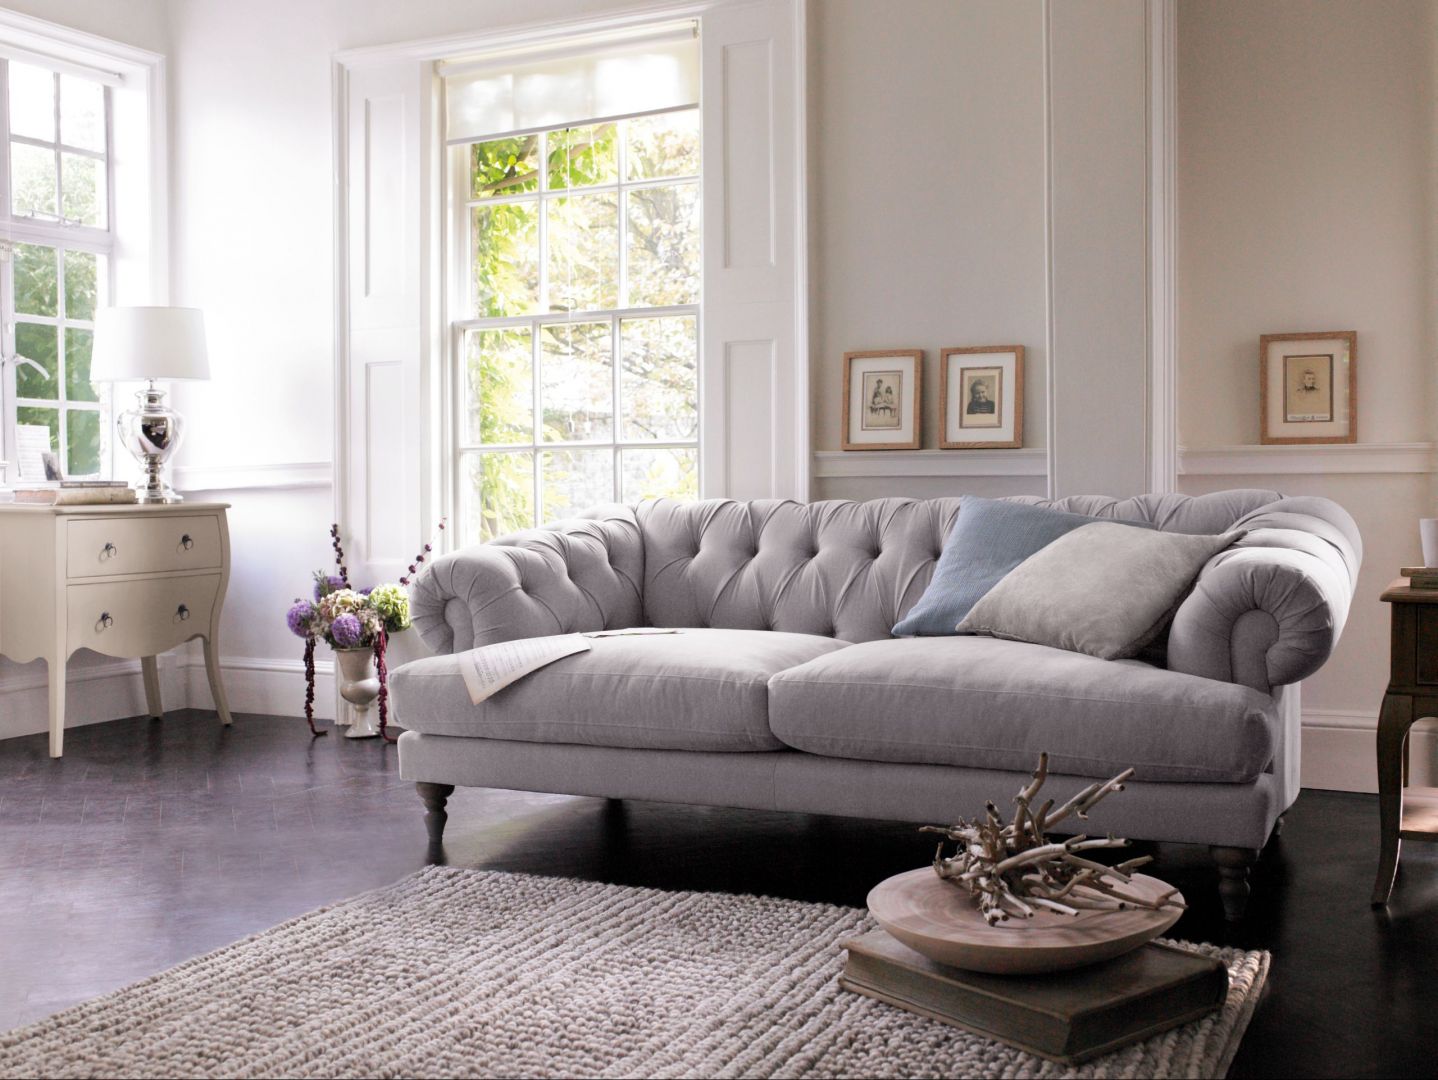 Sofa stylizowana na model Chesterfield dosknale uzupełnia wnętrza w stylu glamour. Fot marks&spencer